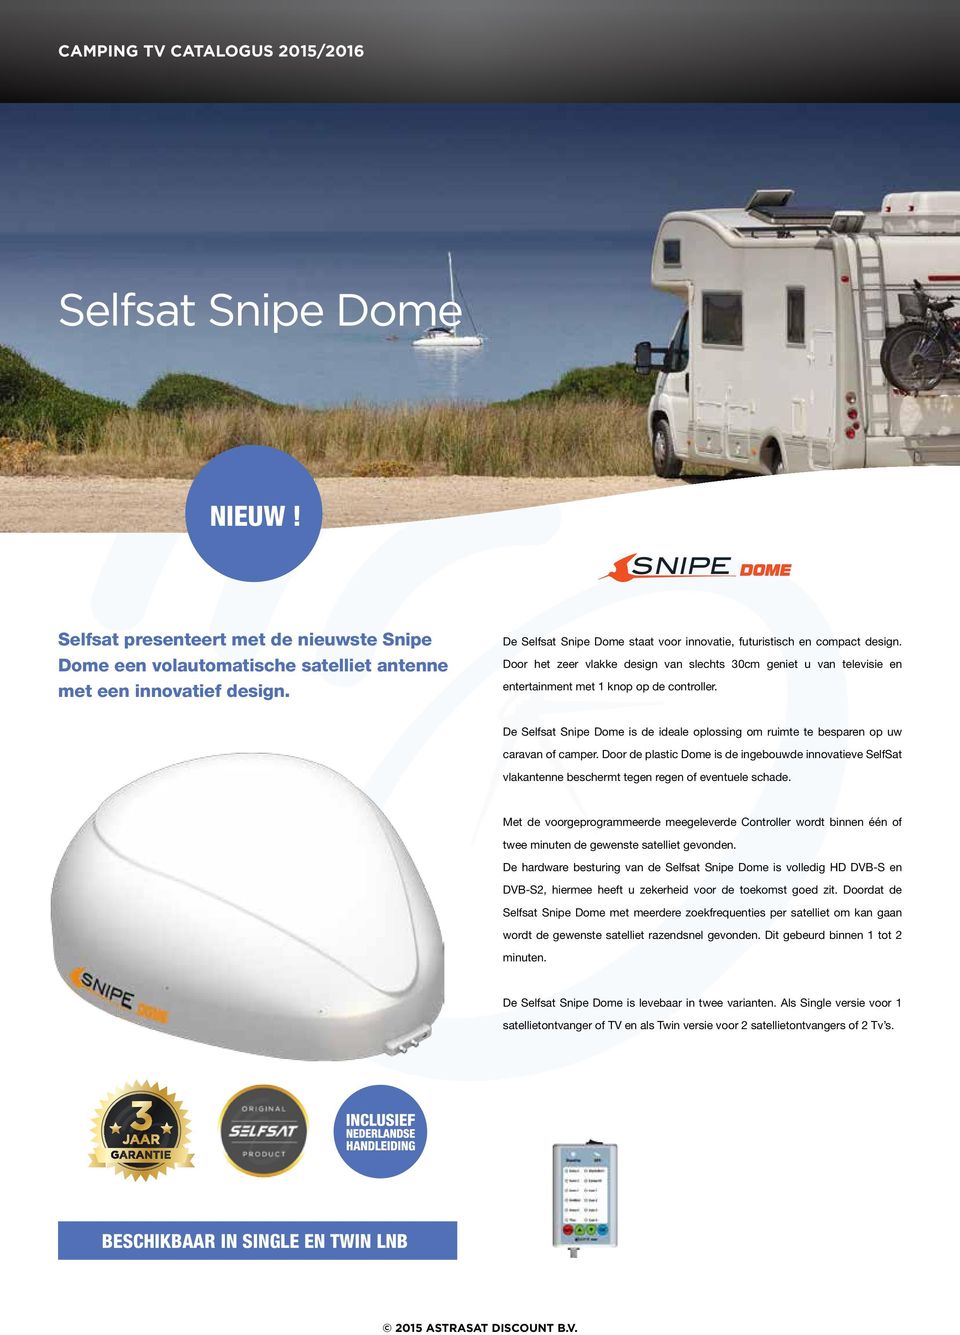 De Selfsat Snipe Dome is de ideale oplossing om ruimte te besparen op uw caravan of camper.